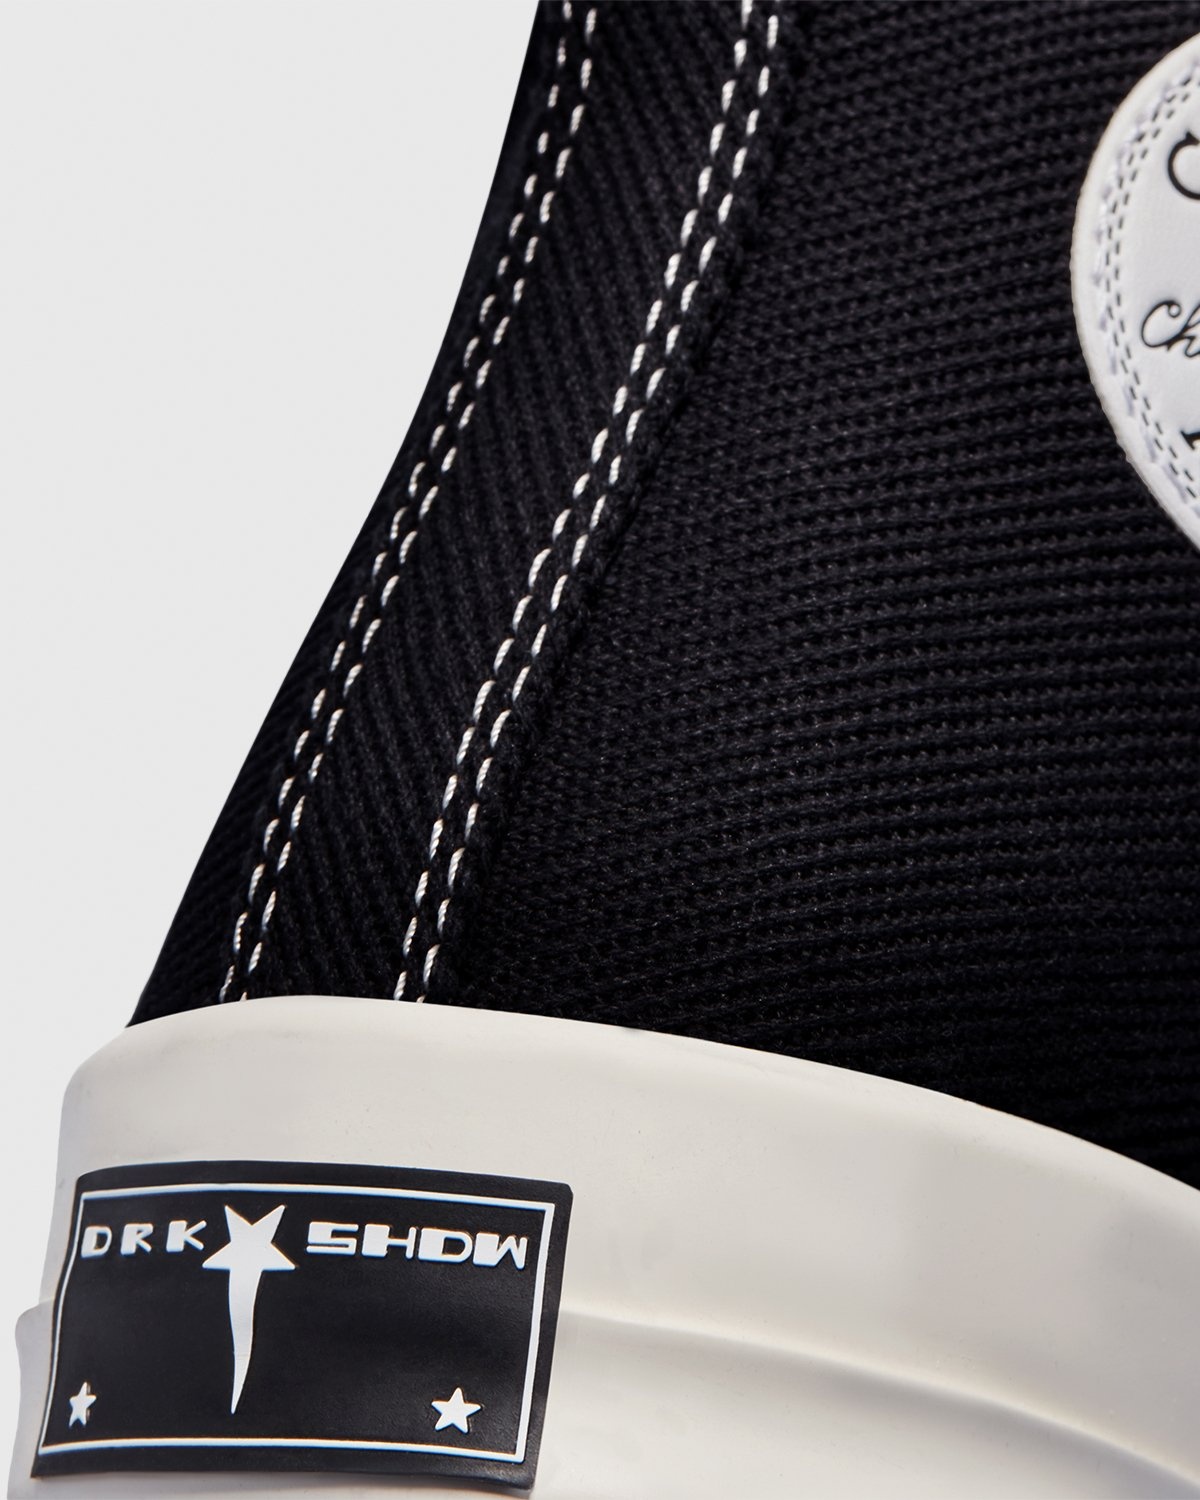 Converse – DRKSHDW TURBODRK Chuck 70 Black - High Top Sneakers - Black - Image 5